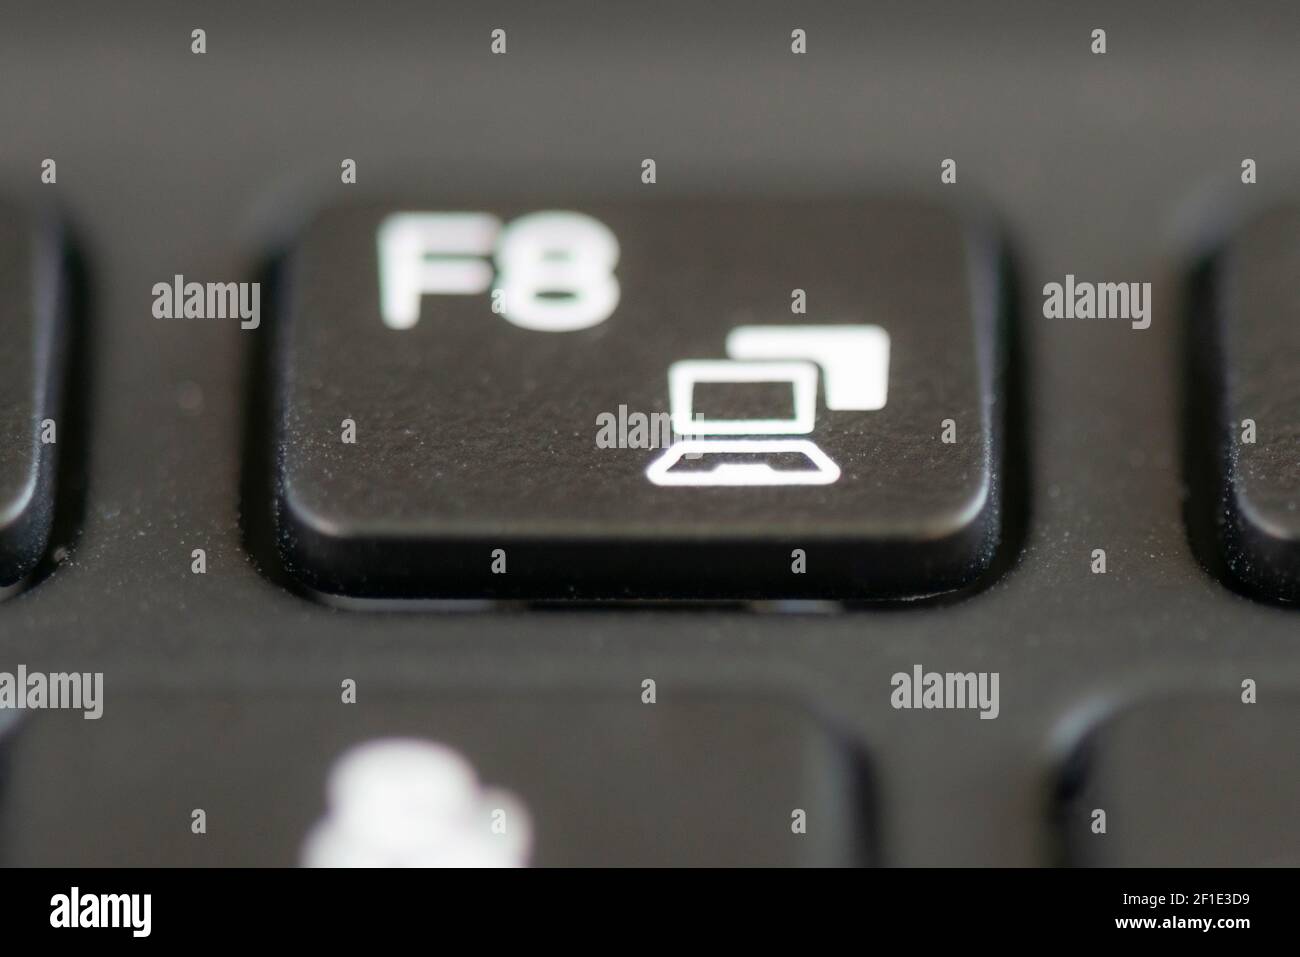 F8 und Share-Screen-Taste auf einer Laptop-Tastatur Stockfotografie - Alamy